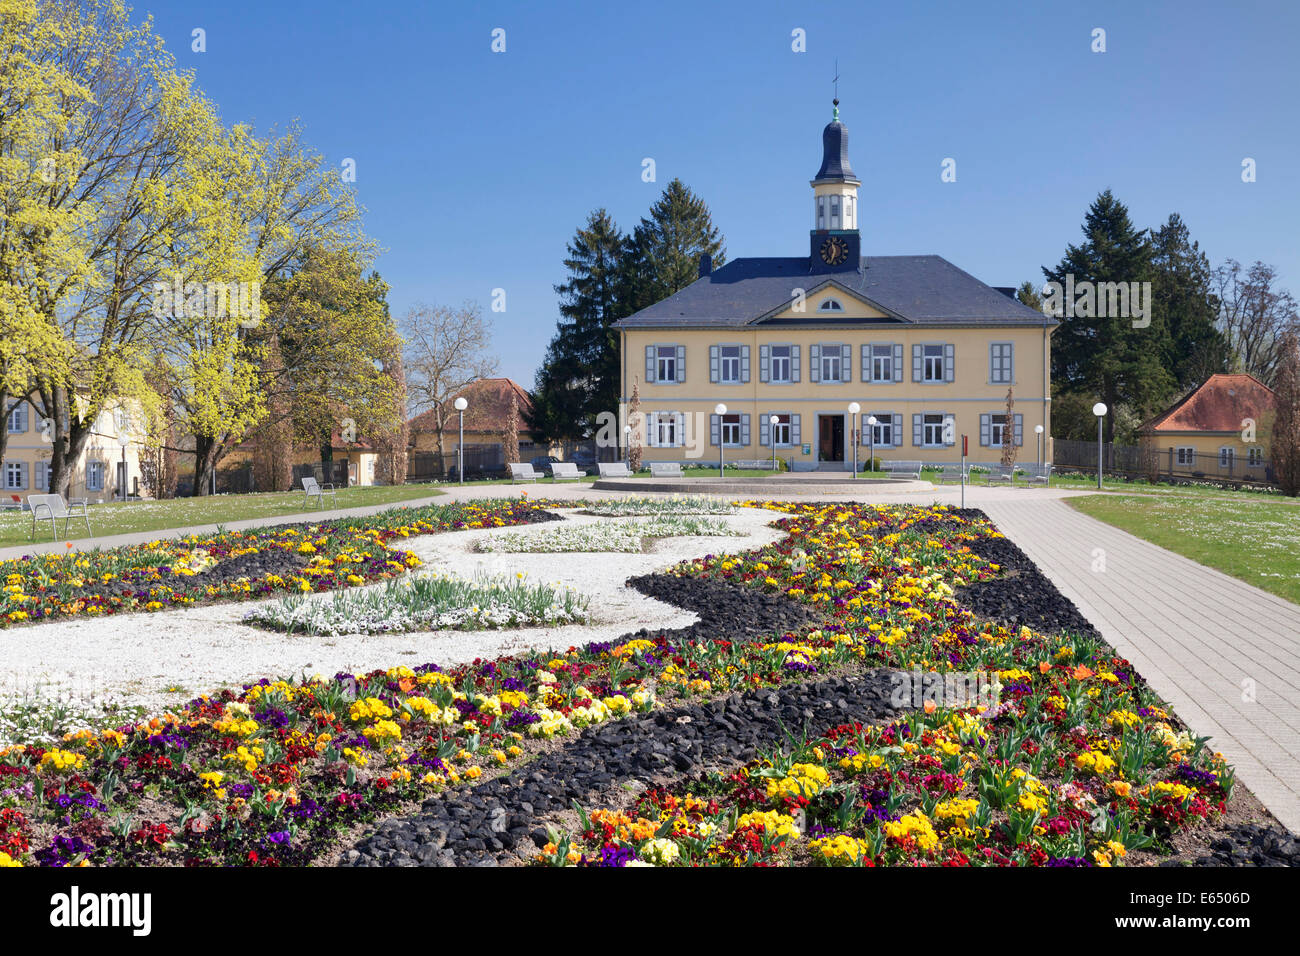 Kurpark mit Salinen, die Gebäude, Bad Rappenau, Kraichgau,  Baden-Württemberg, Deutschland Stockfotografie - Alamy